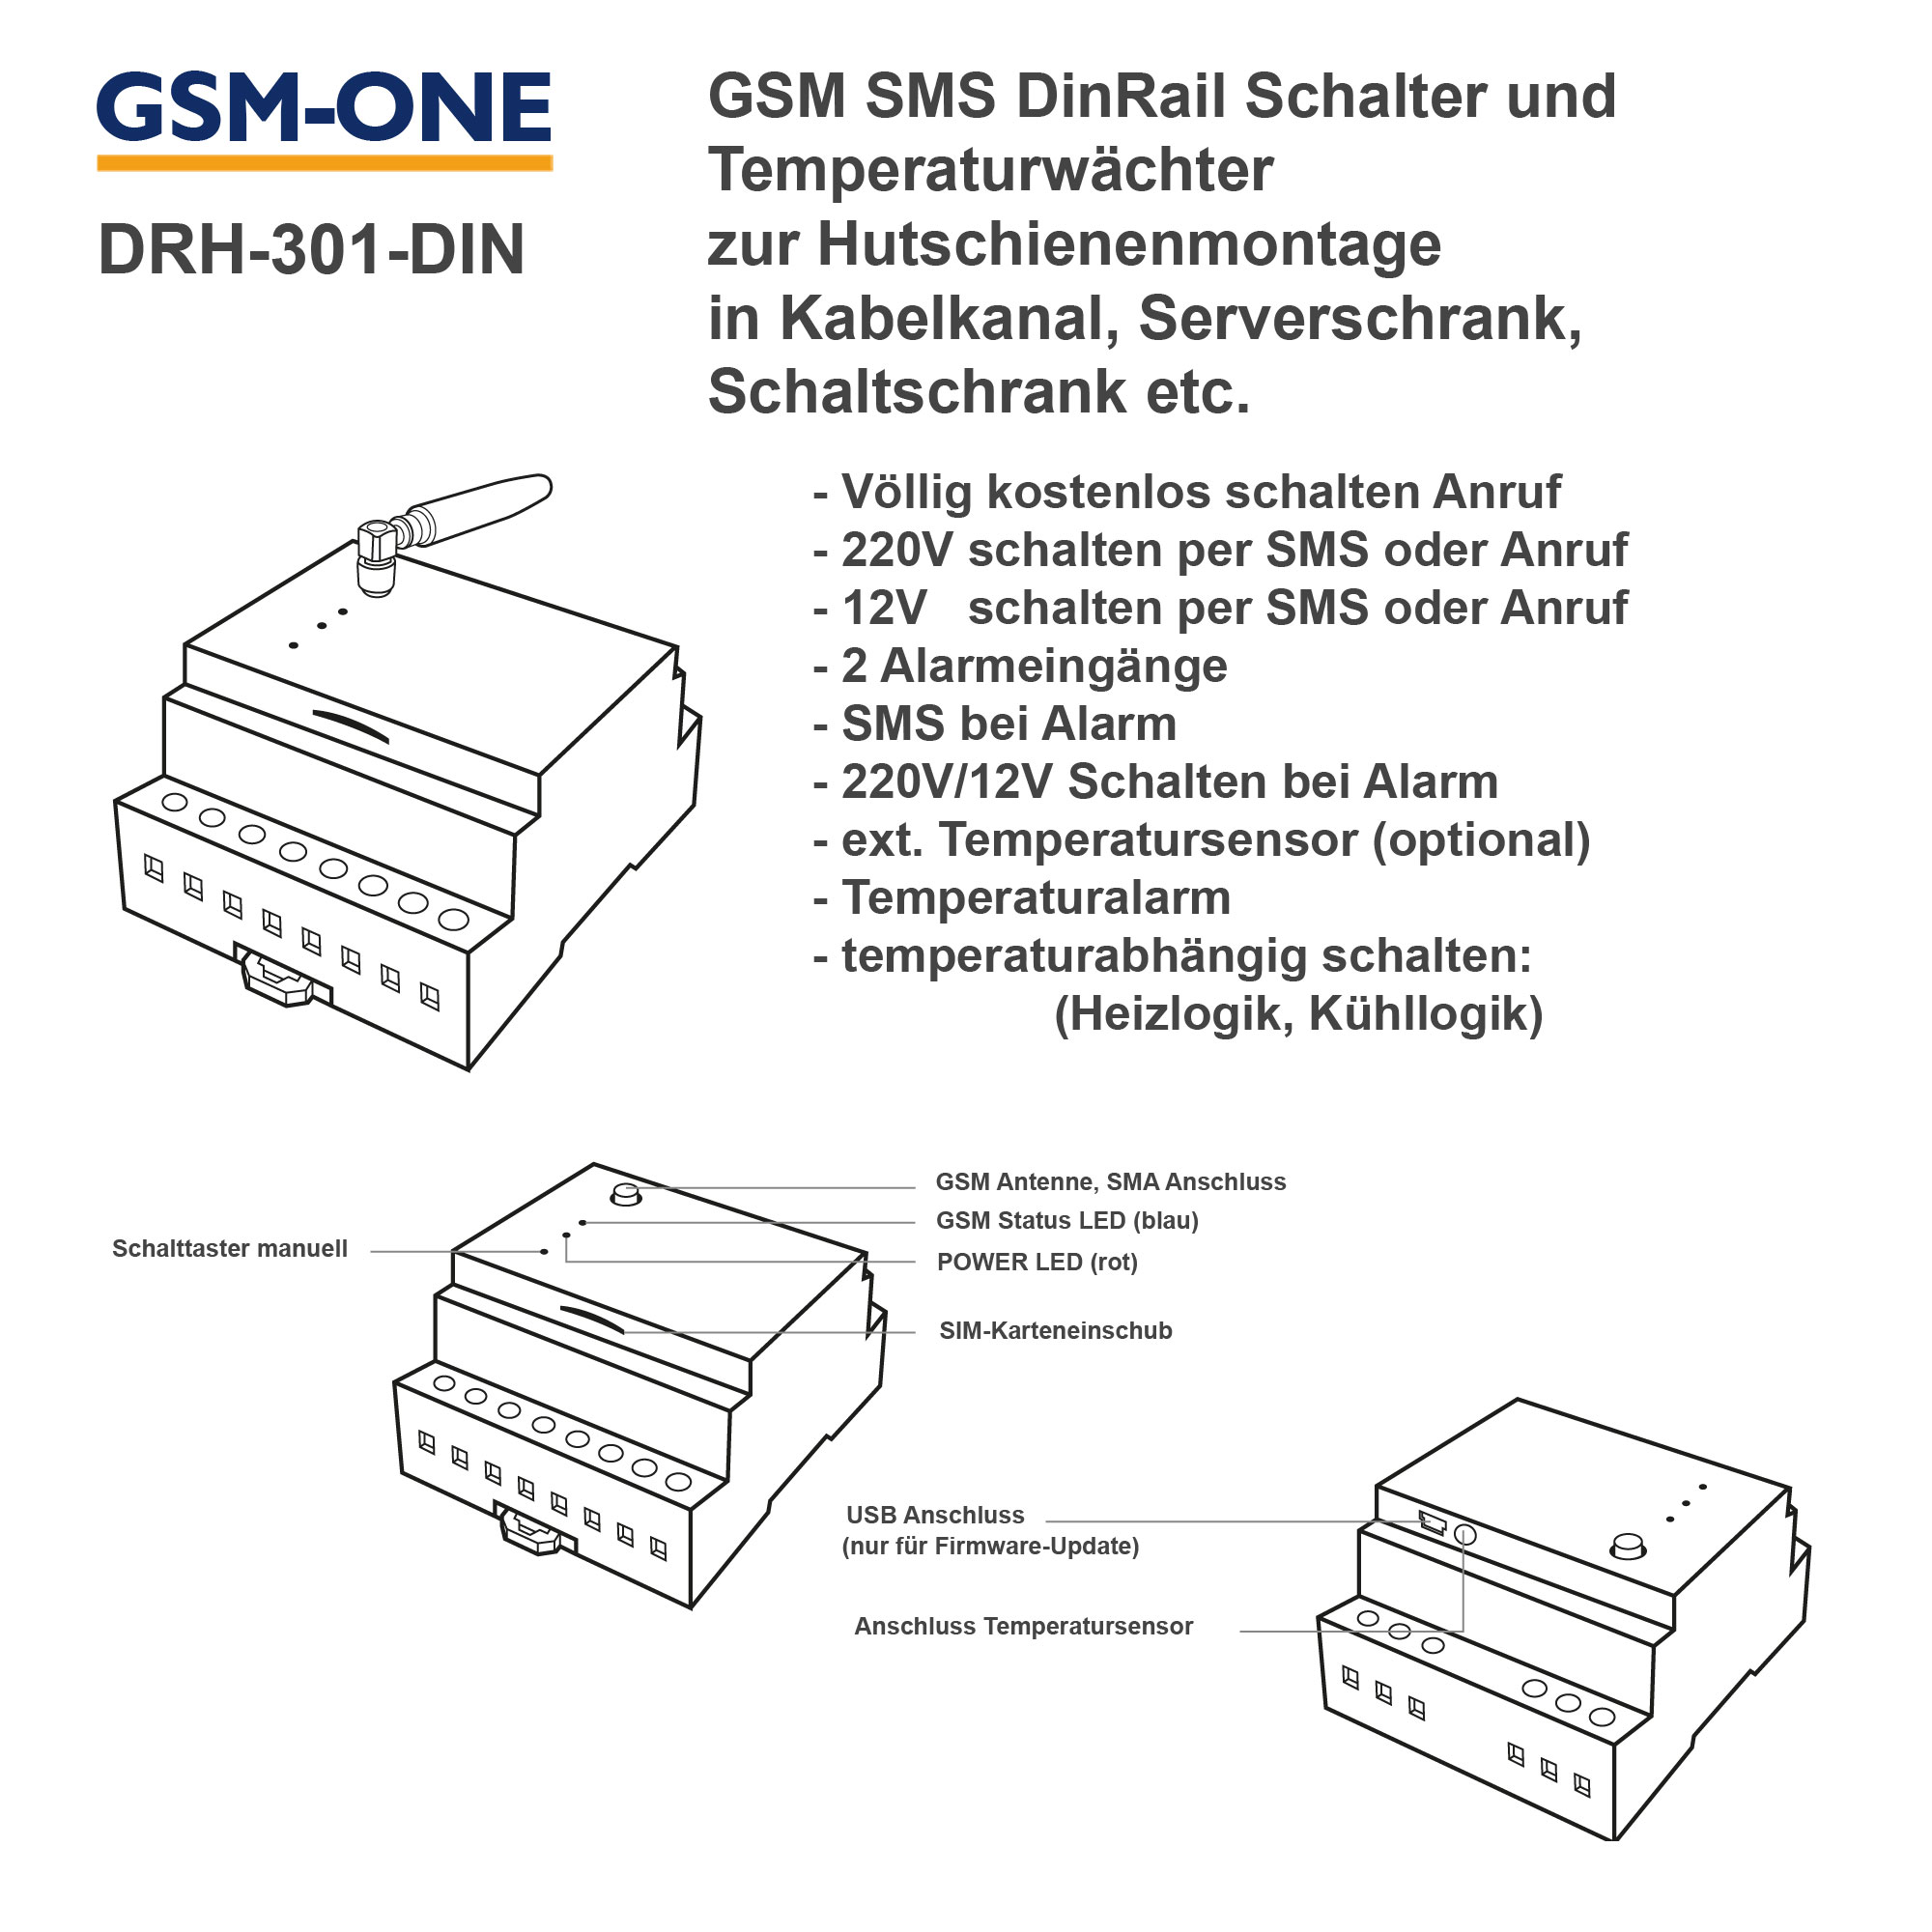 DRH-301-DIN GSM SMS Fernschalter und Temperaturwächter DinRail + Temperaturfühler TS-02